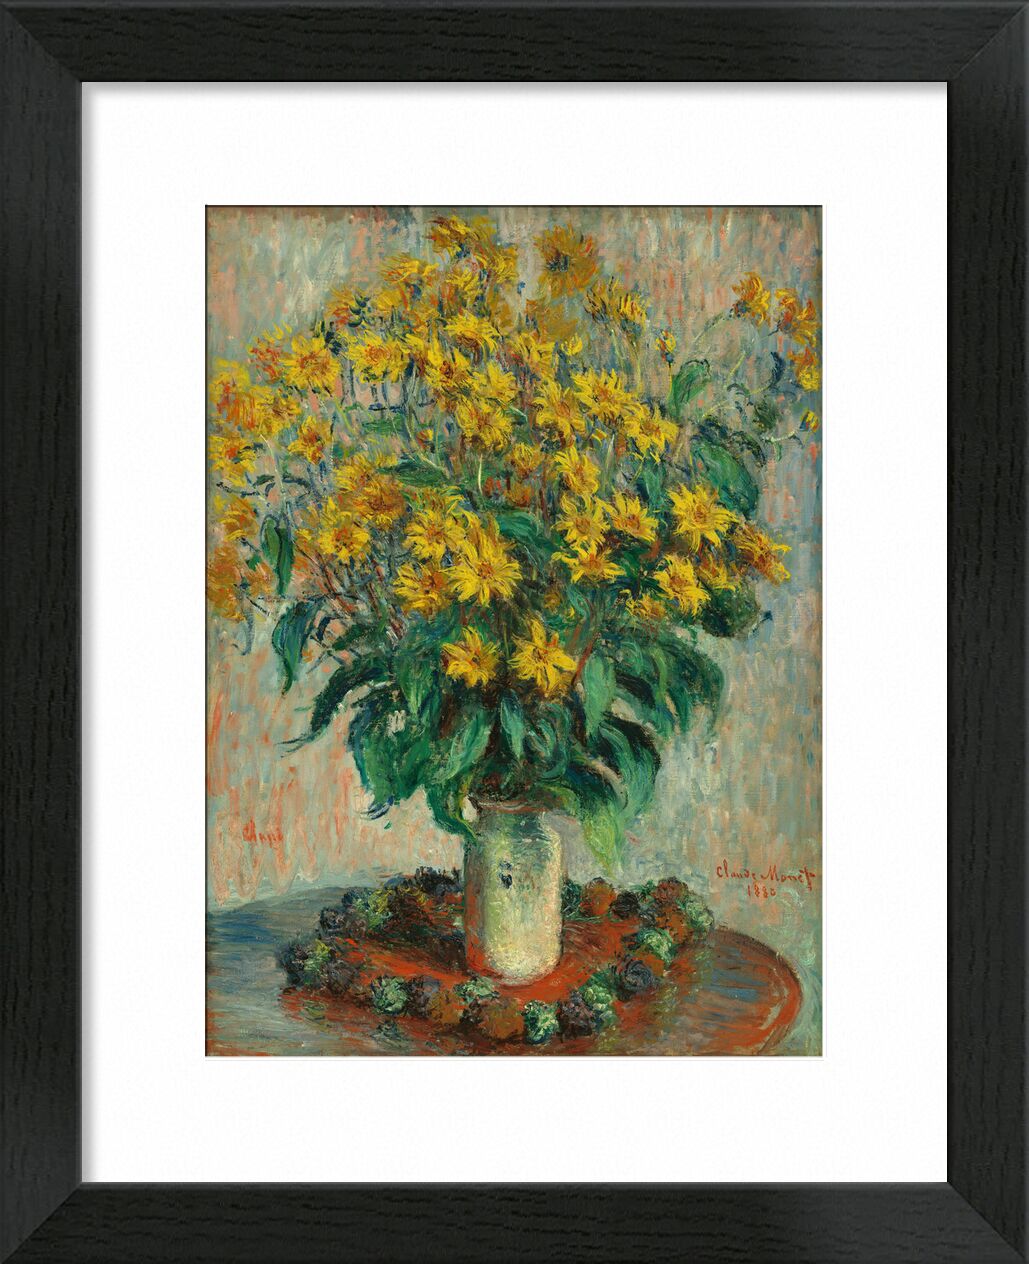 Jerusalem Artichoke Flowers von Bildende Kunst, Prodi Art, gelb, Vase, monet, CLAUDE MONET, Blumen, Malerei